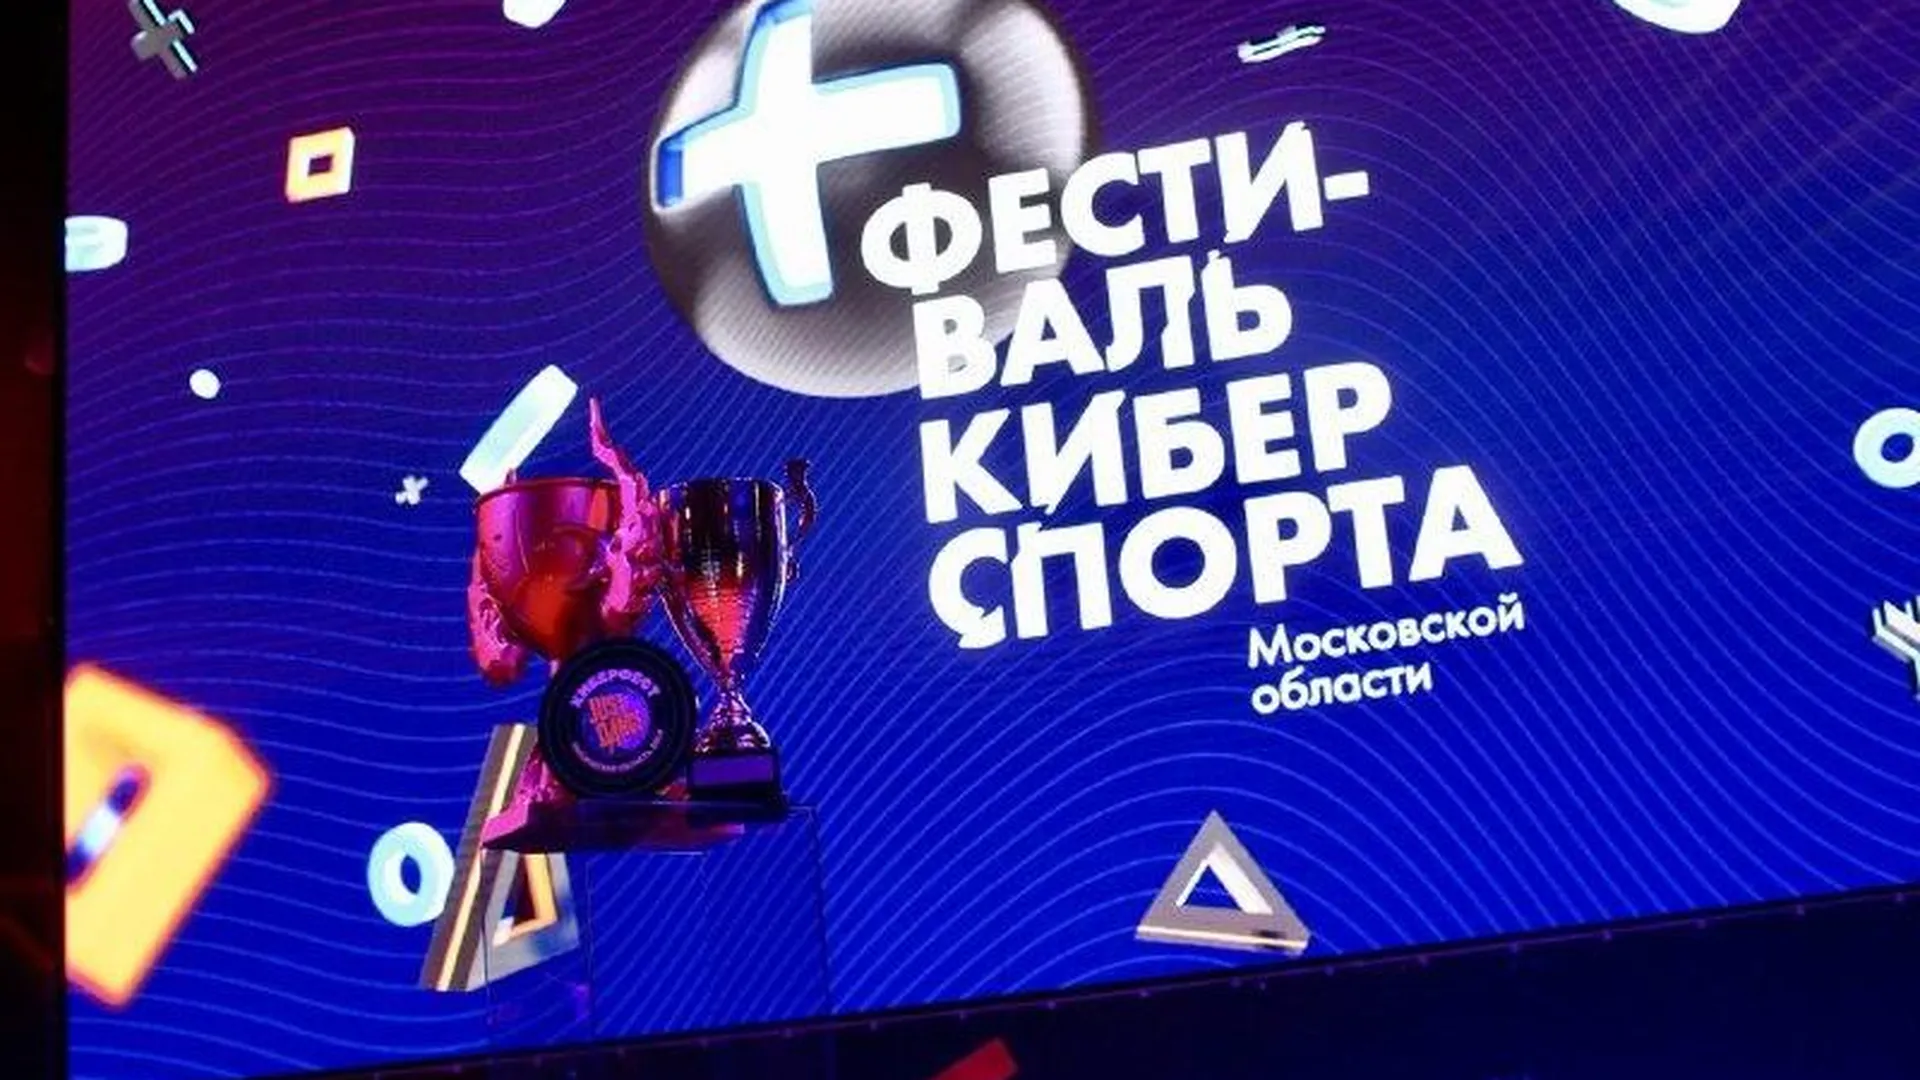 Одинцово принимает первый в истории чемпионат области по киберспорту